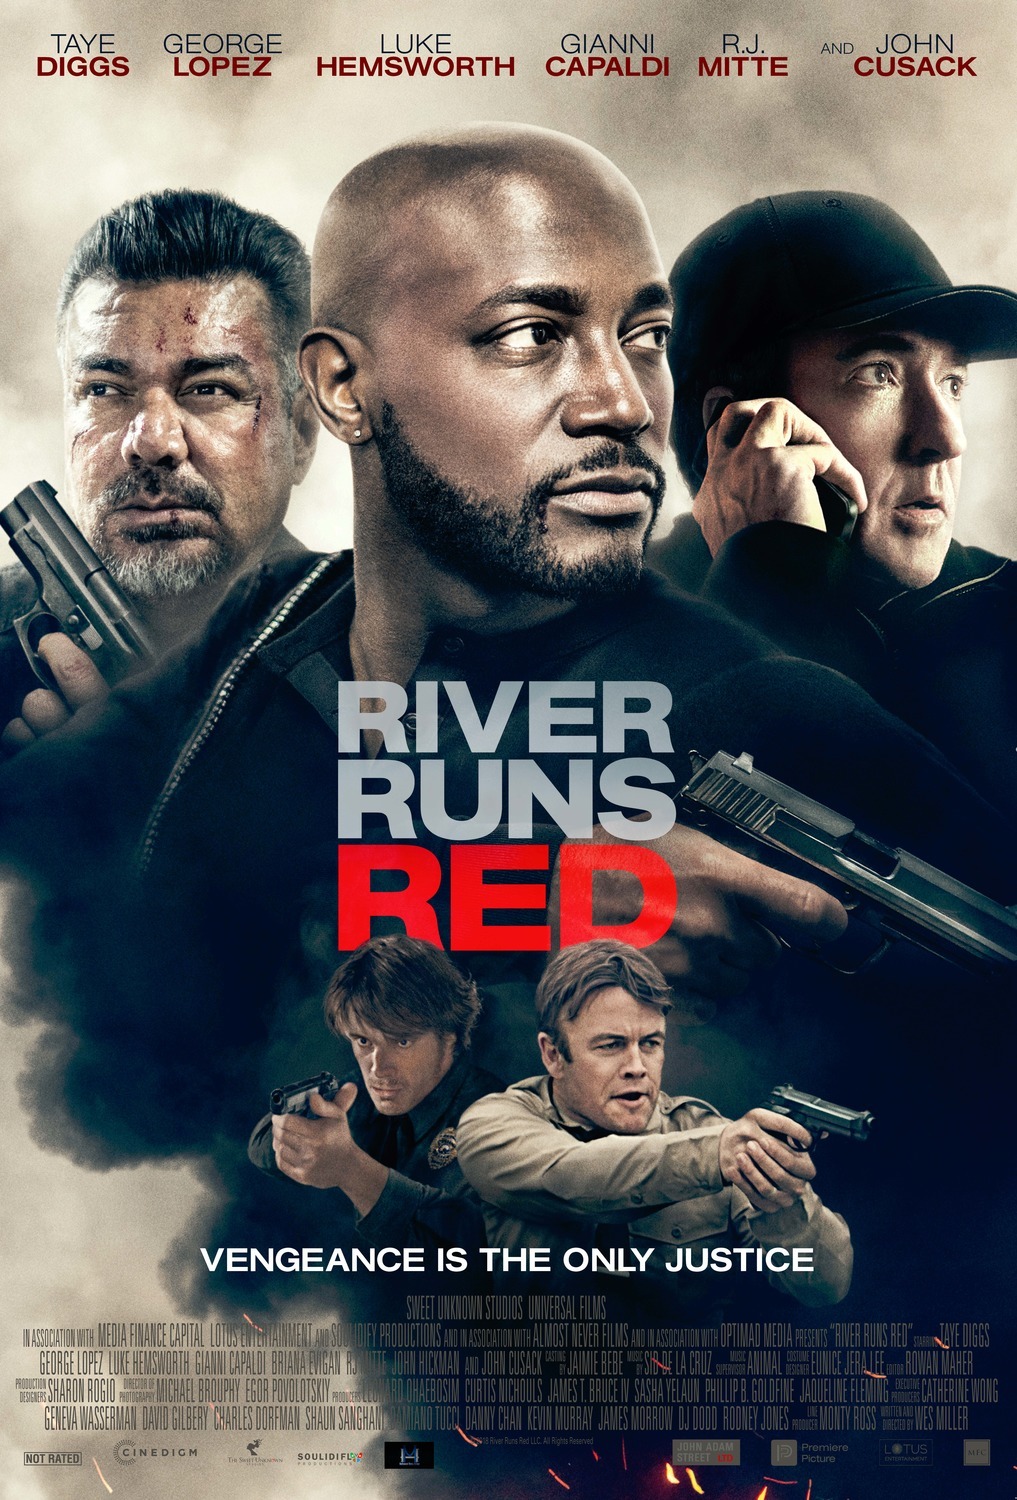 Nonton film River Runs Red layarkaca21 indoxx1 ganool online streaming terbaru